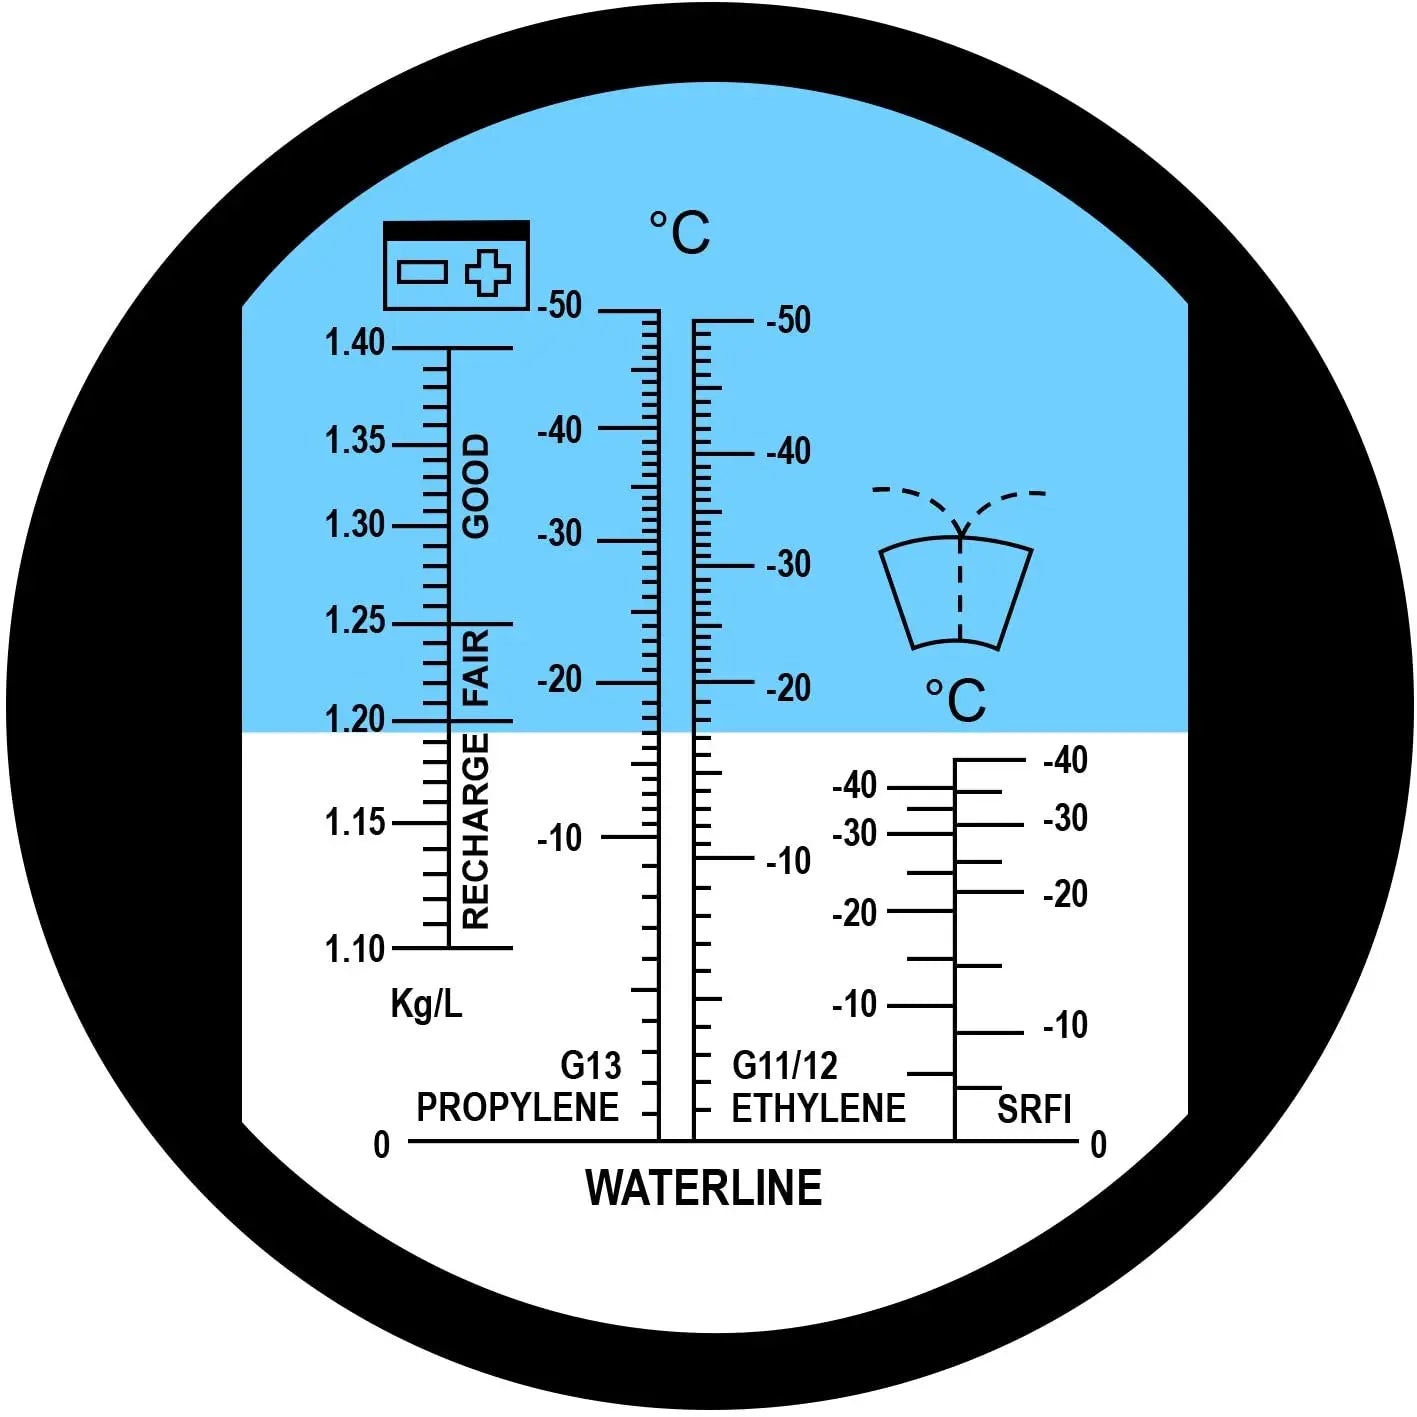 Car Antifreeze System Glycol Propylene Ethylene Battery Acid 1.10 – 1.40 kg/l Cleaning -40~0°C Windshield Fluid Refractometer